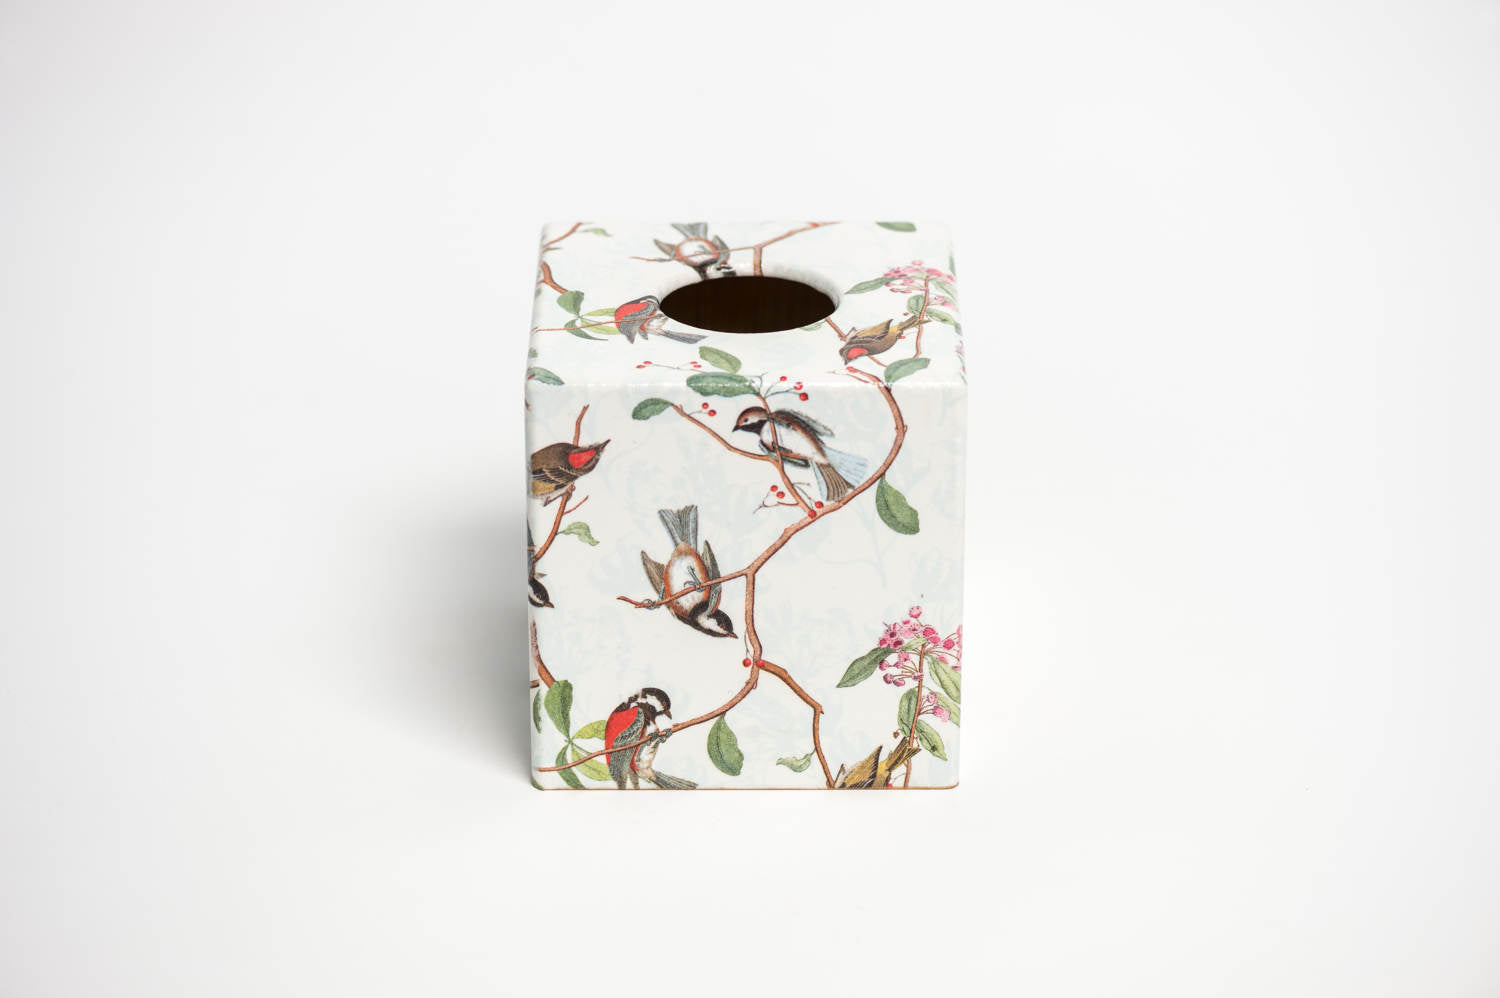 Birdsong Tissue Box Cover - Handmade